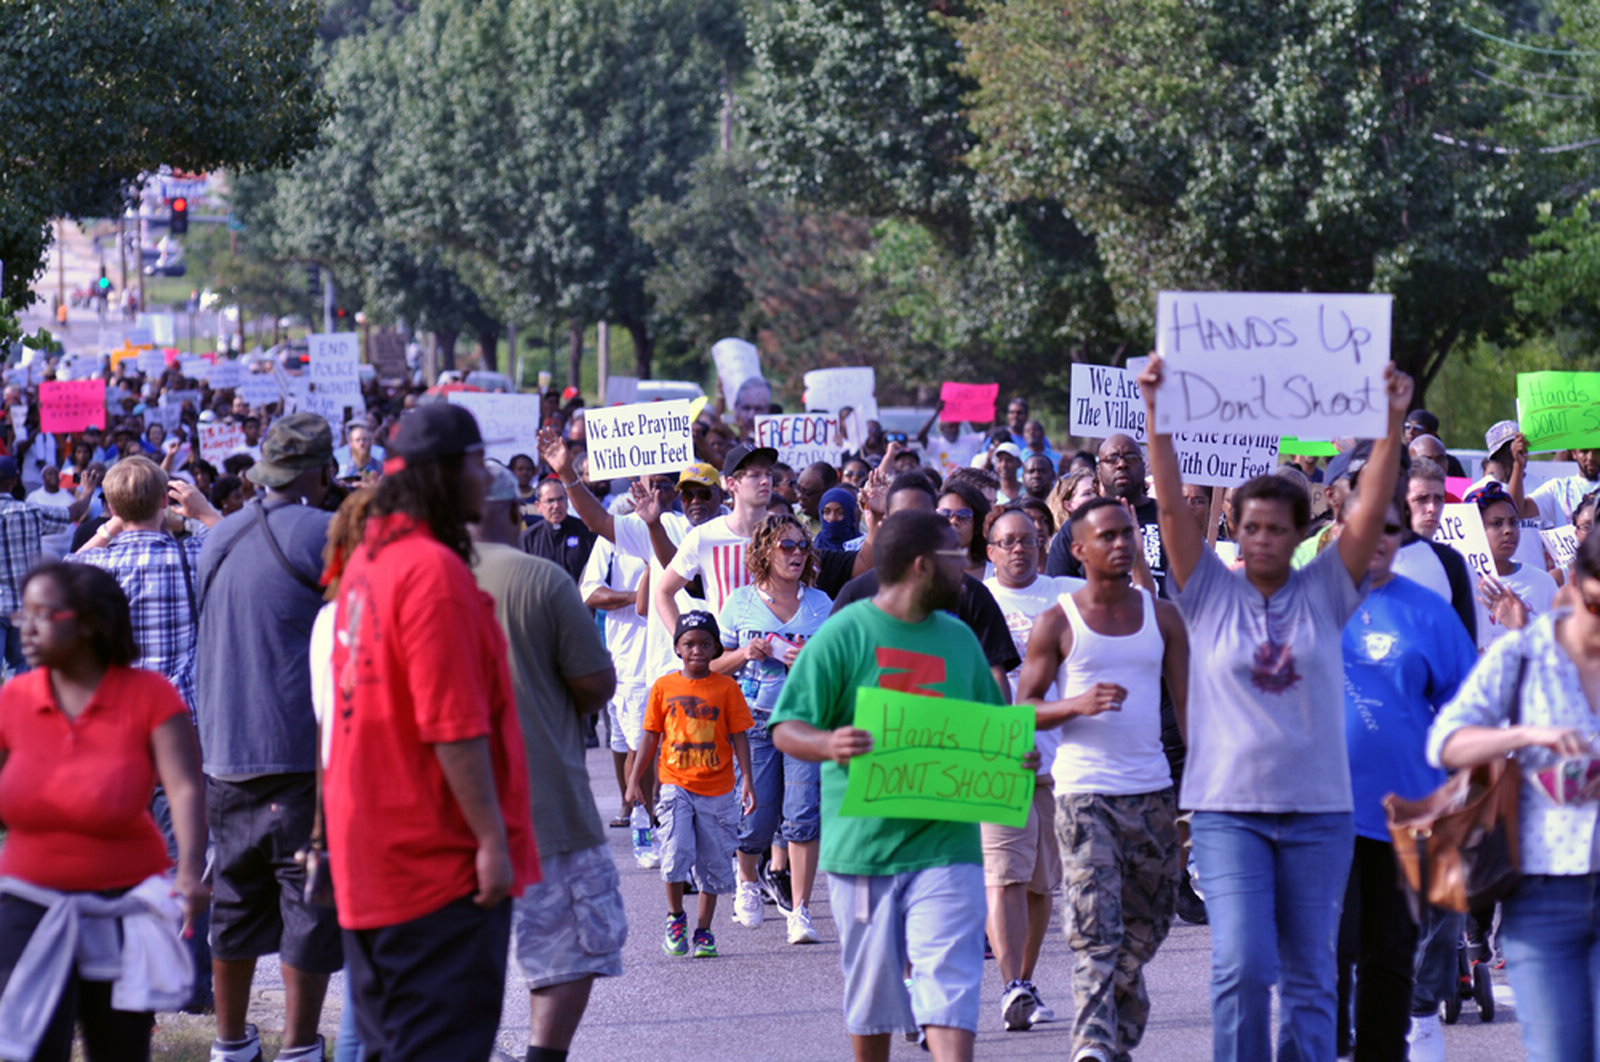 "Kezeket fel! Ne lőjj!" Tüntetés Fergusonban a feketékkel szembeni rendőri erőszak miatt 2014. augusztus 14-én (Kép: Wikipedia)